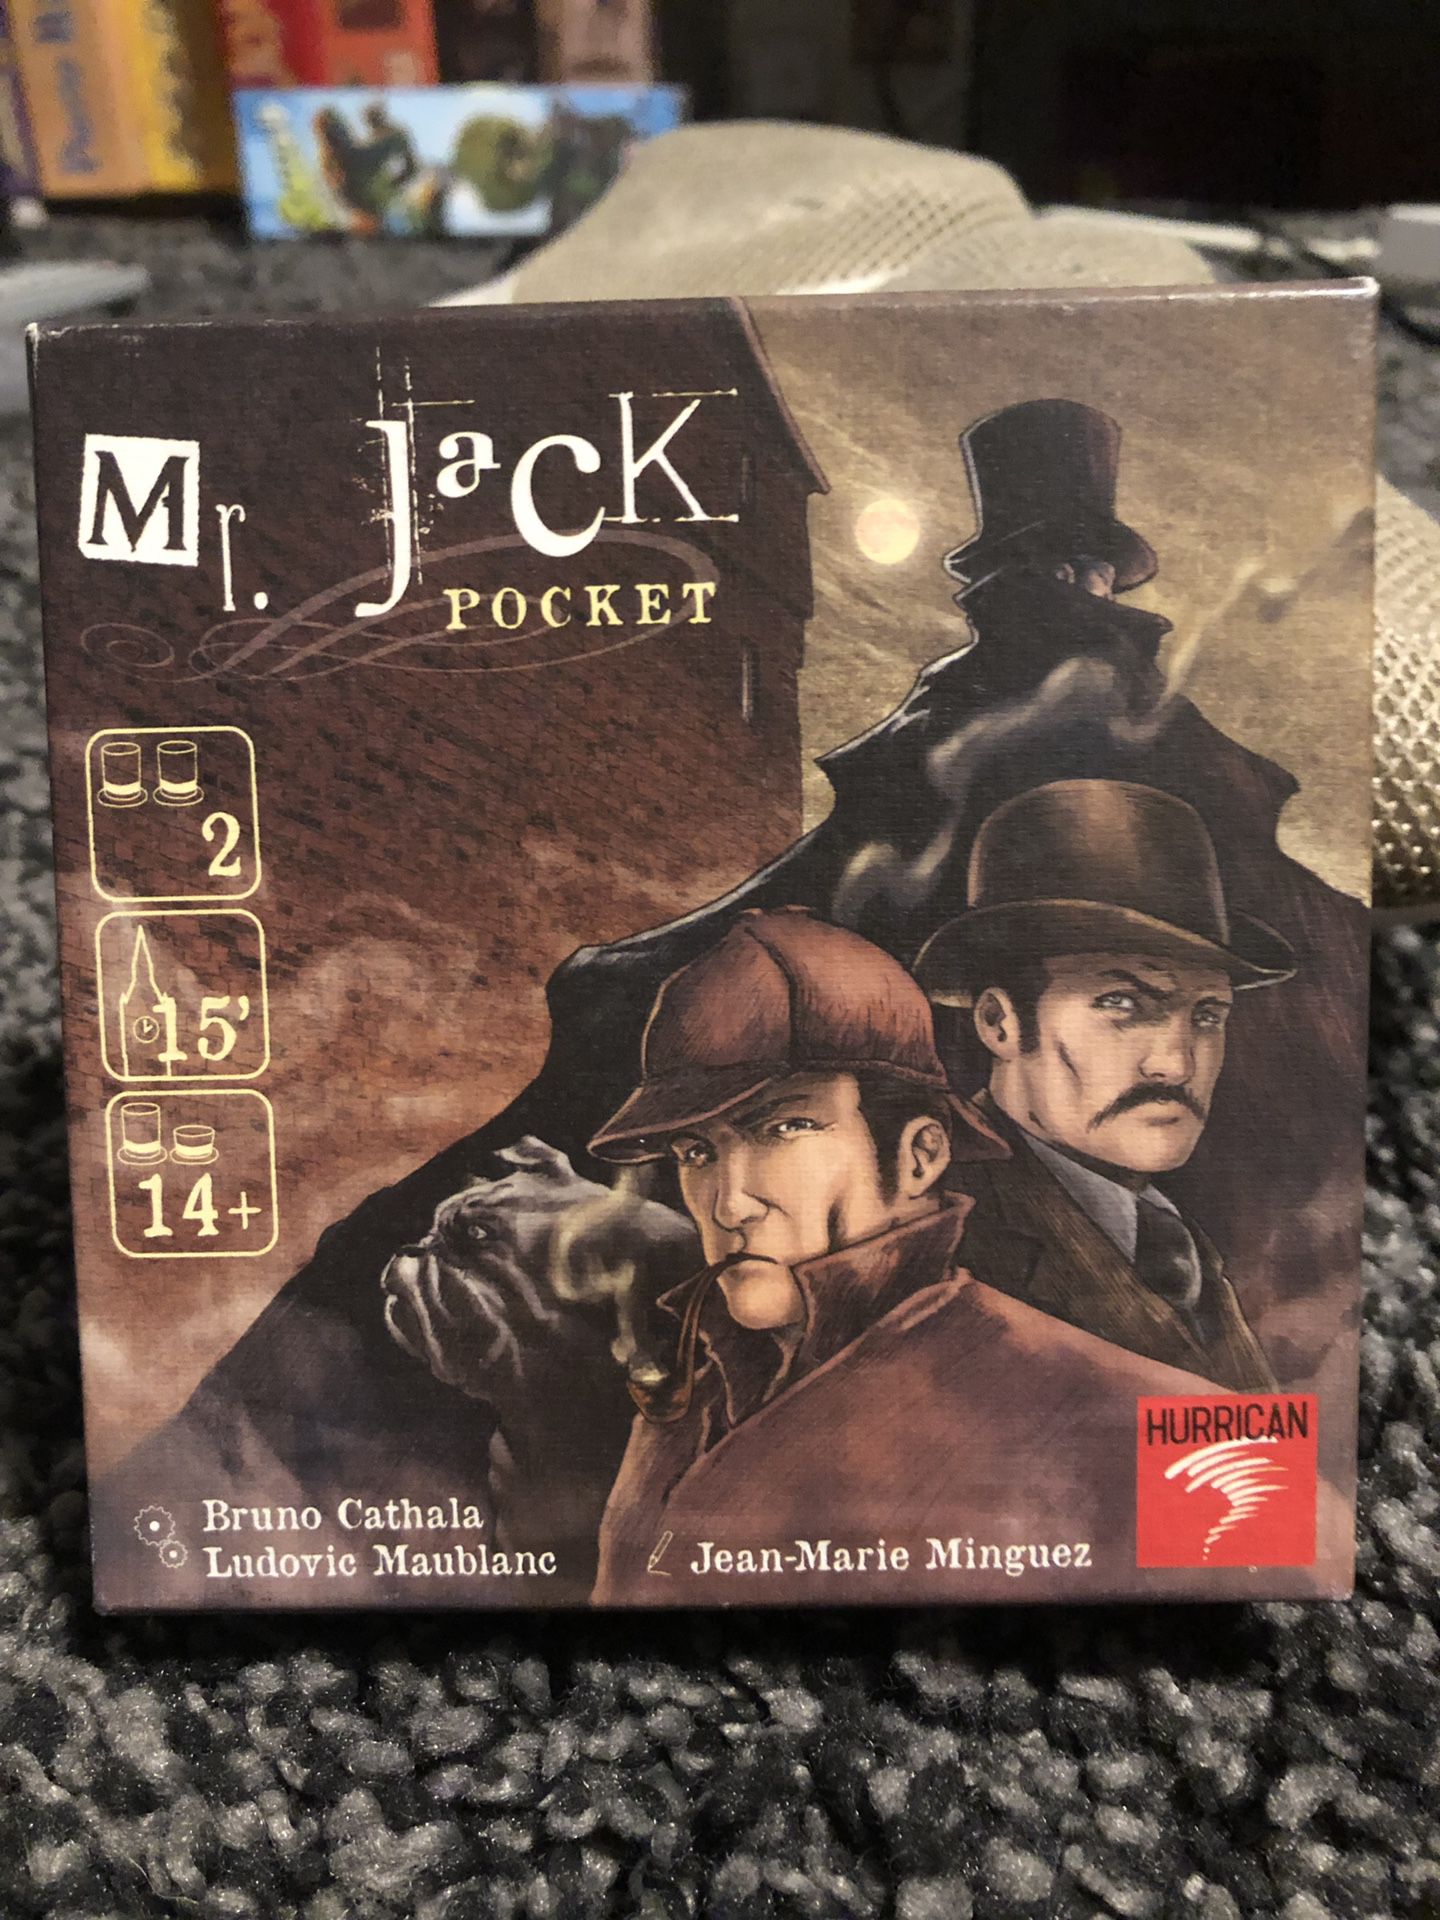 Mr jack pocket board game missing pieces